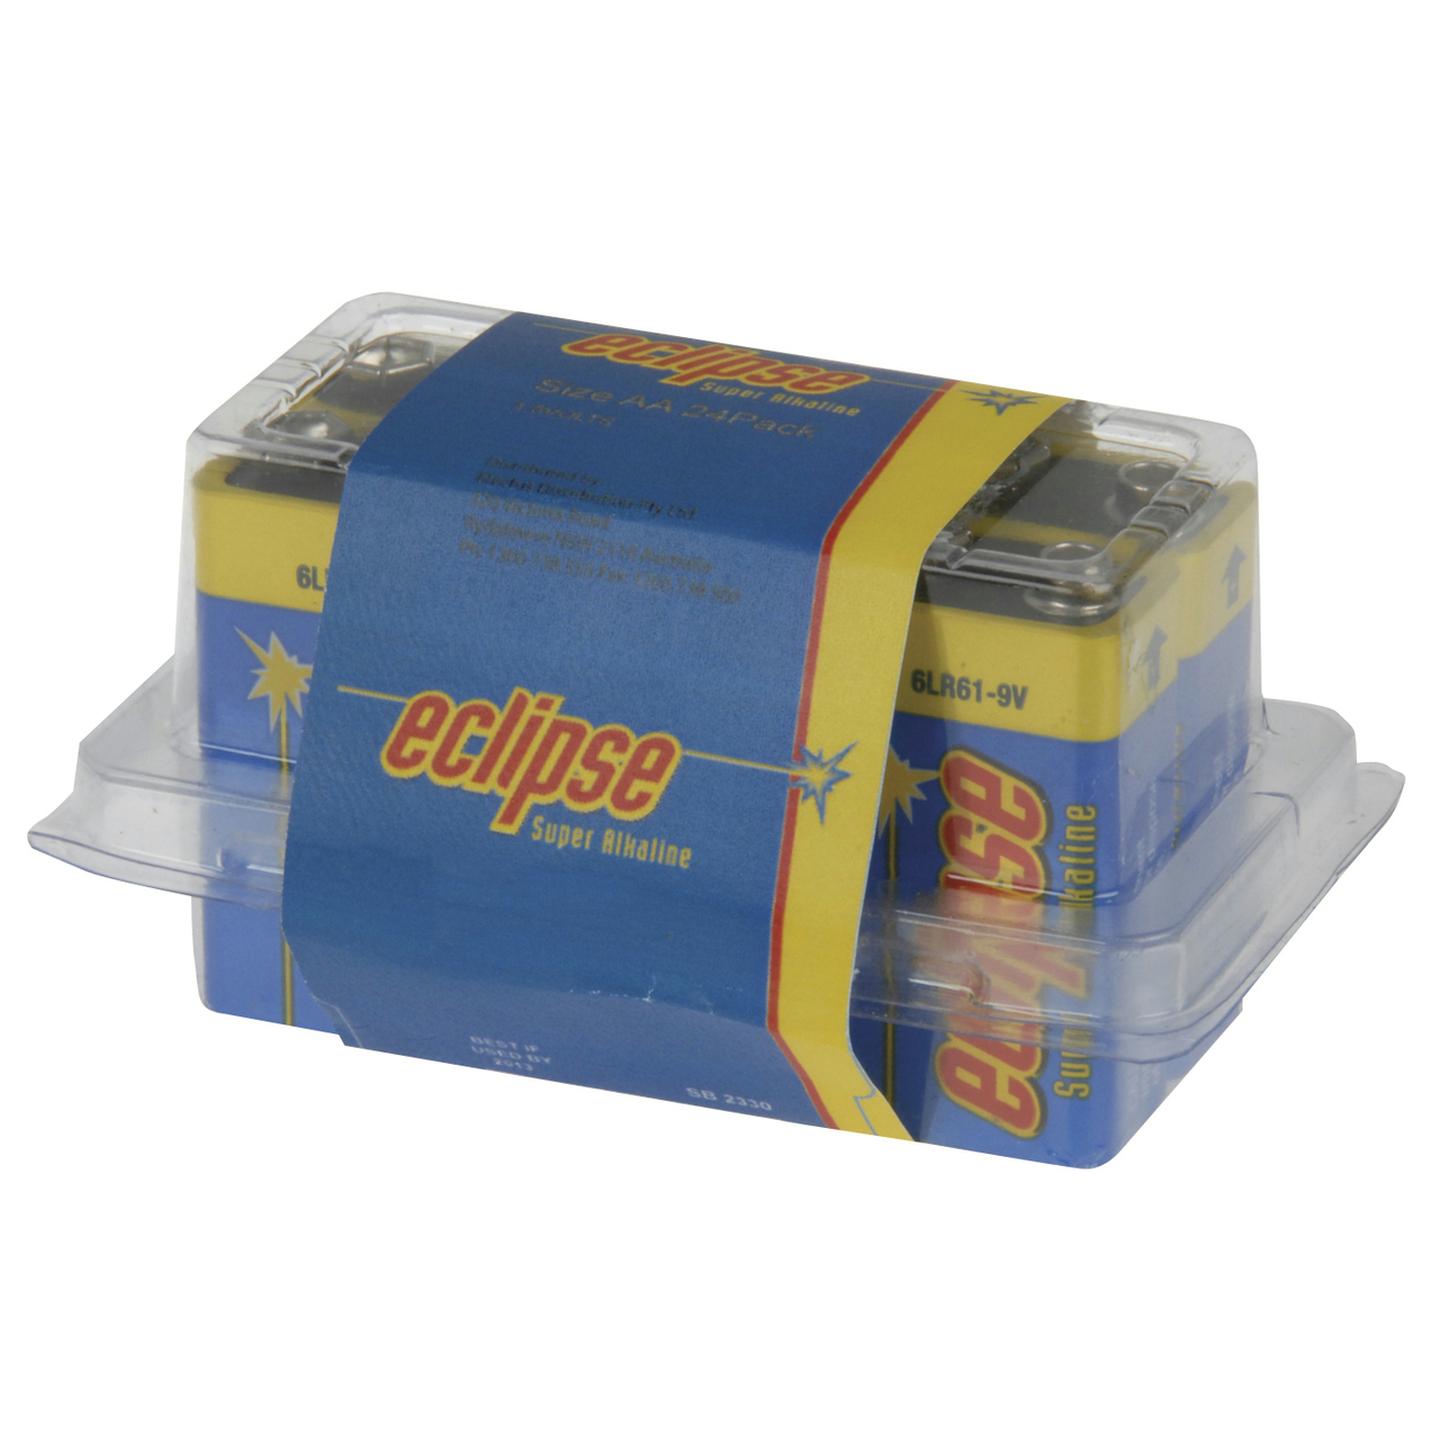 Eclipse 9v Alkaline Batteries - Pack of 6